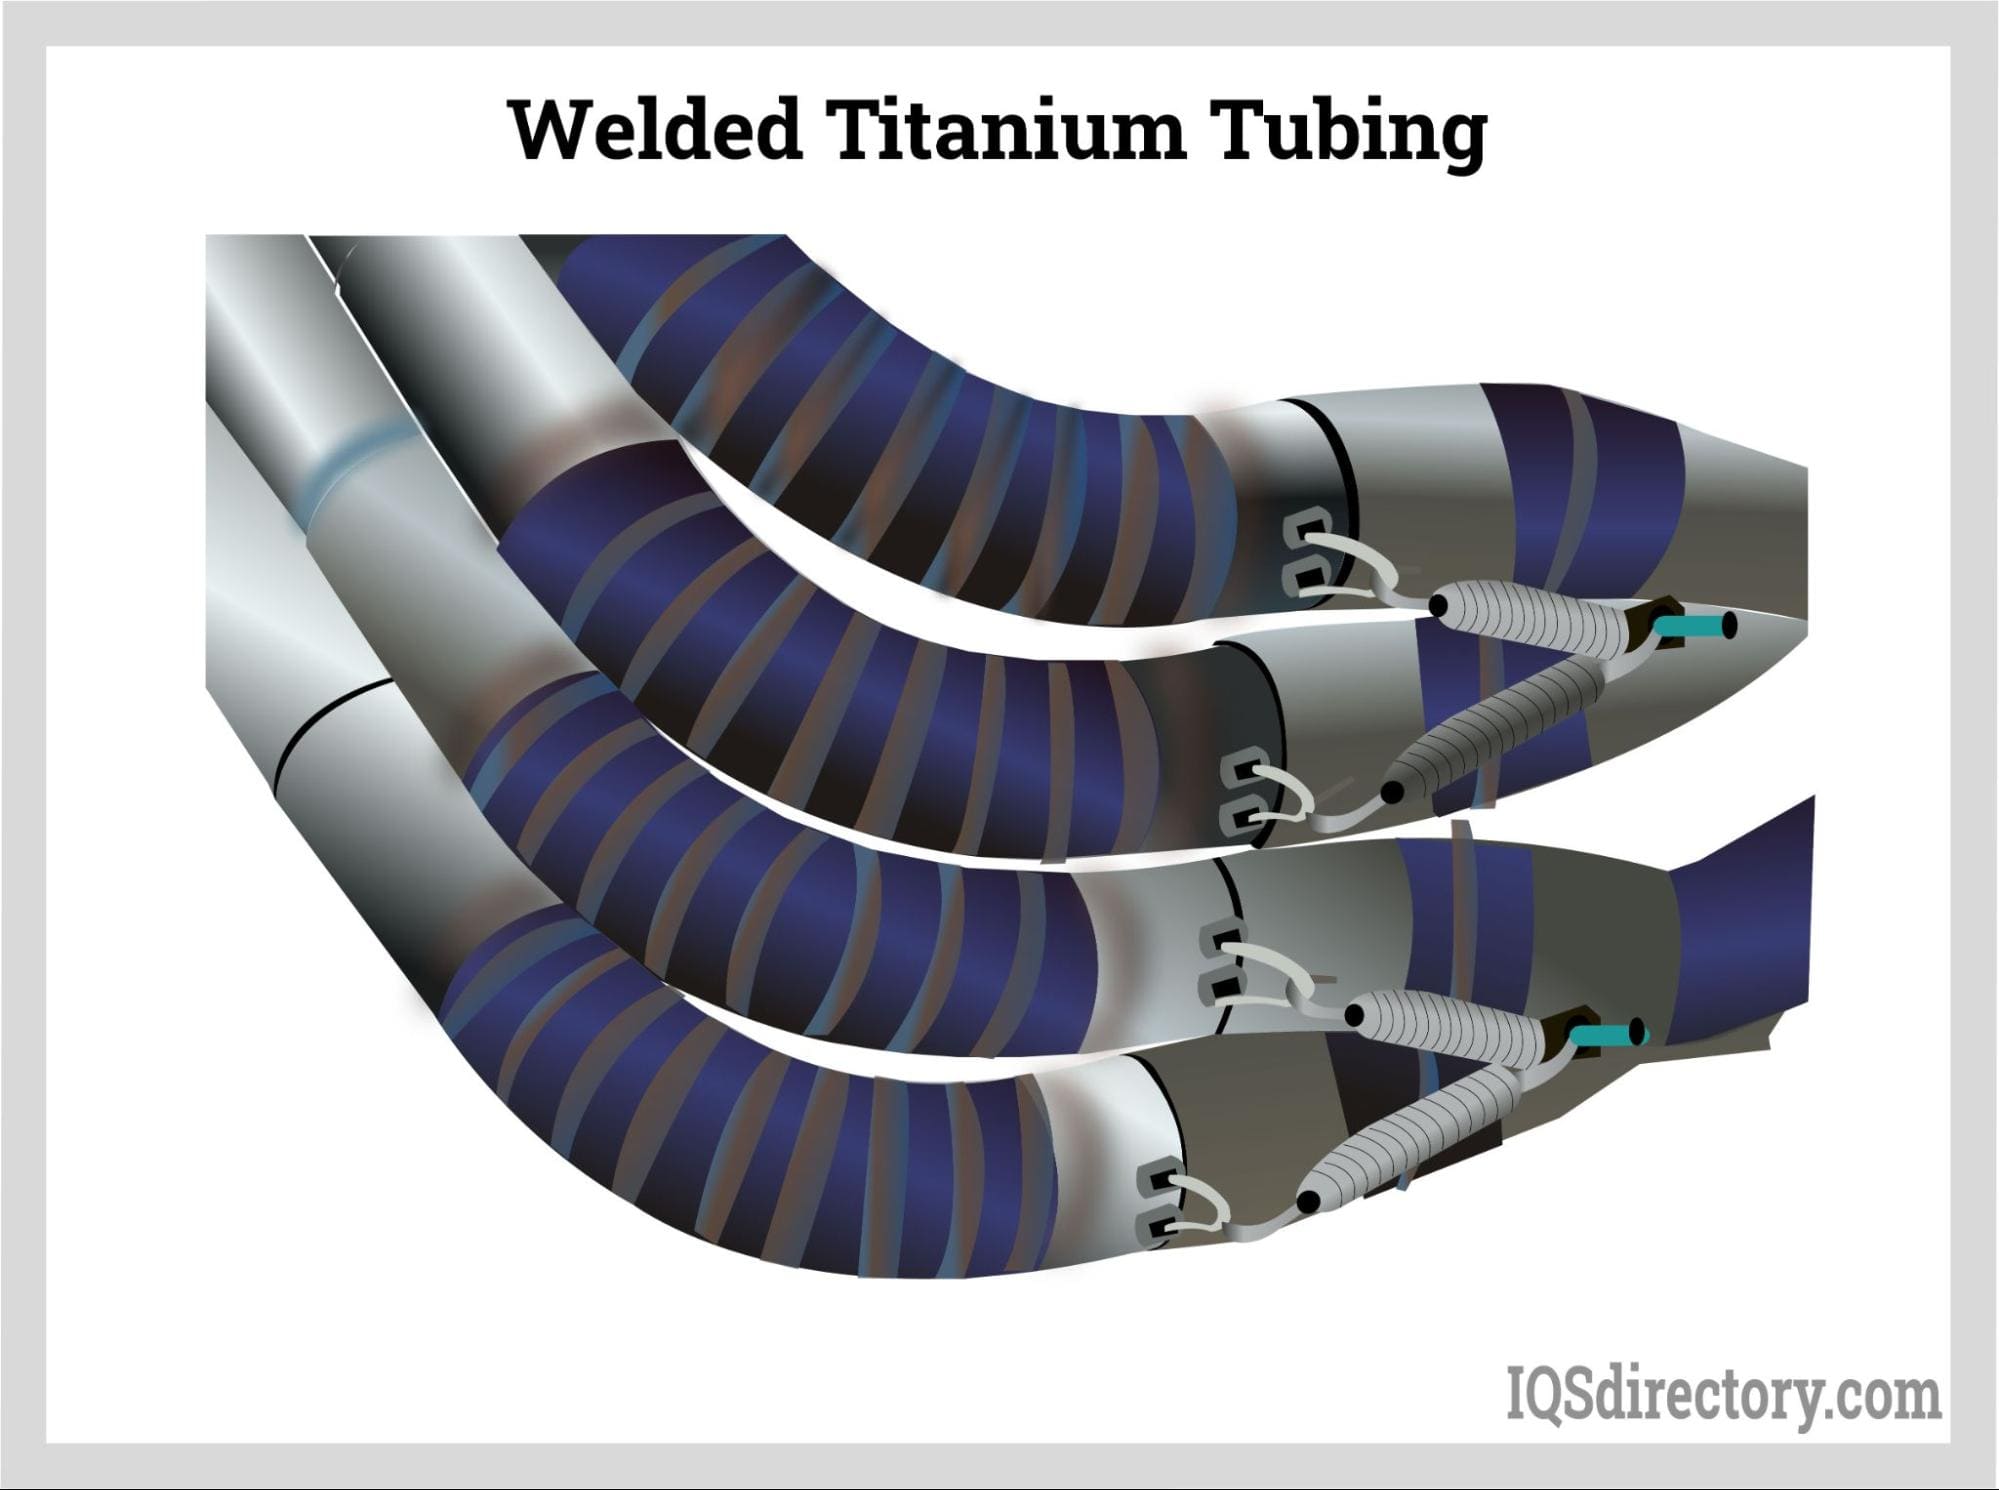 Welded Titanium Tubing